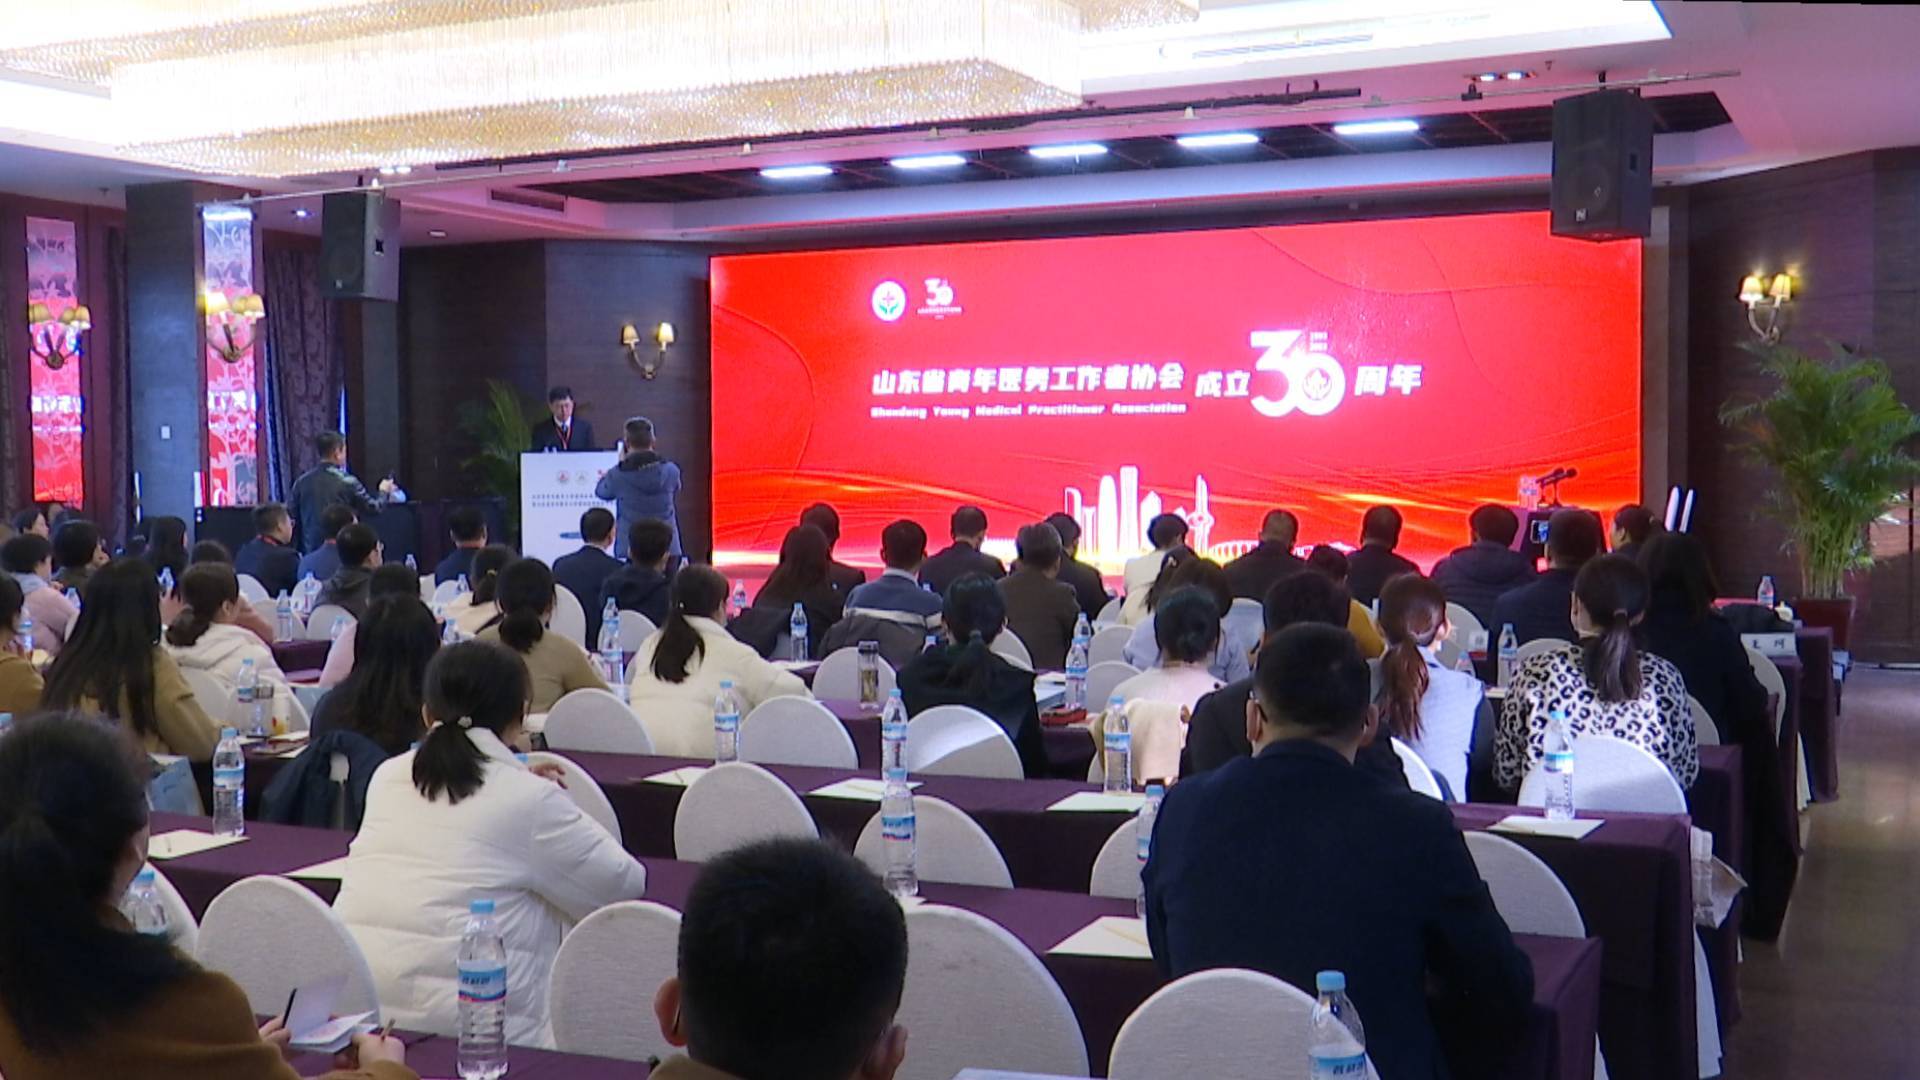 山东省青年医务工作者协会成立30周年学术研讨会暨母胎医学分会成立大会在济南举行